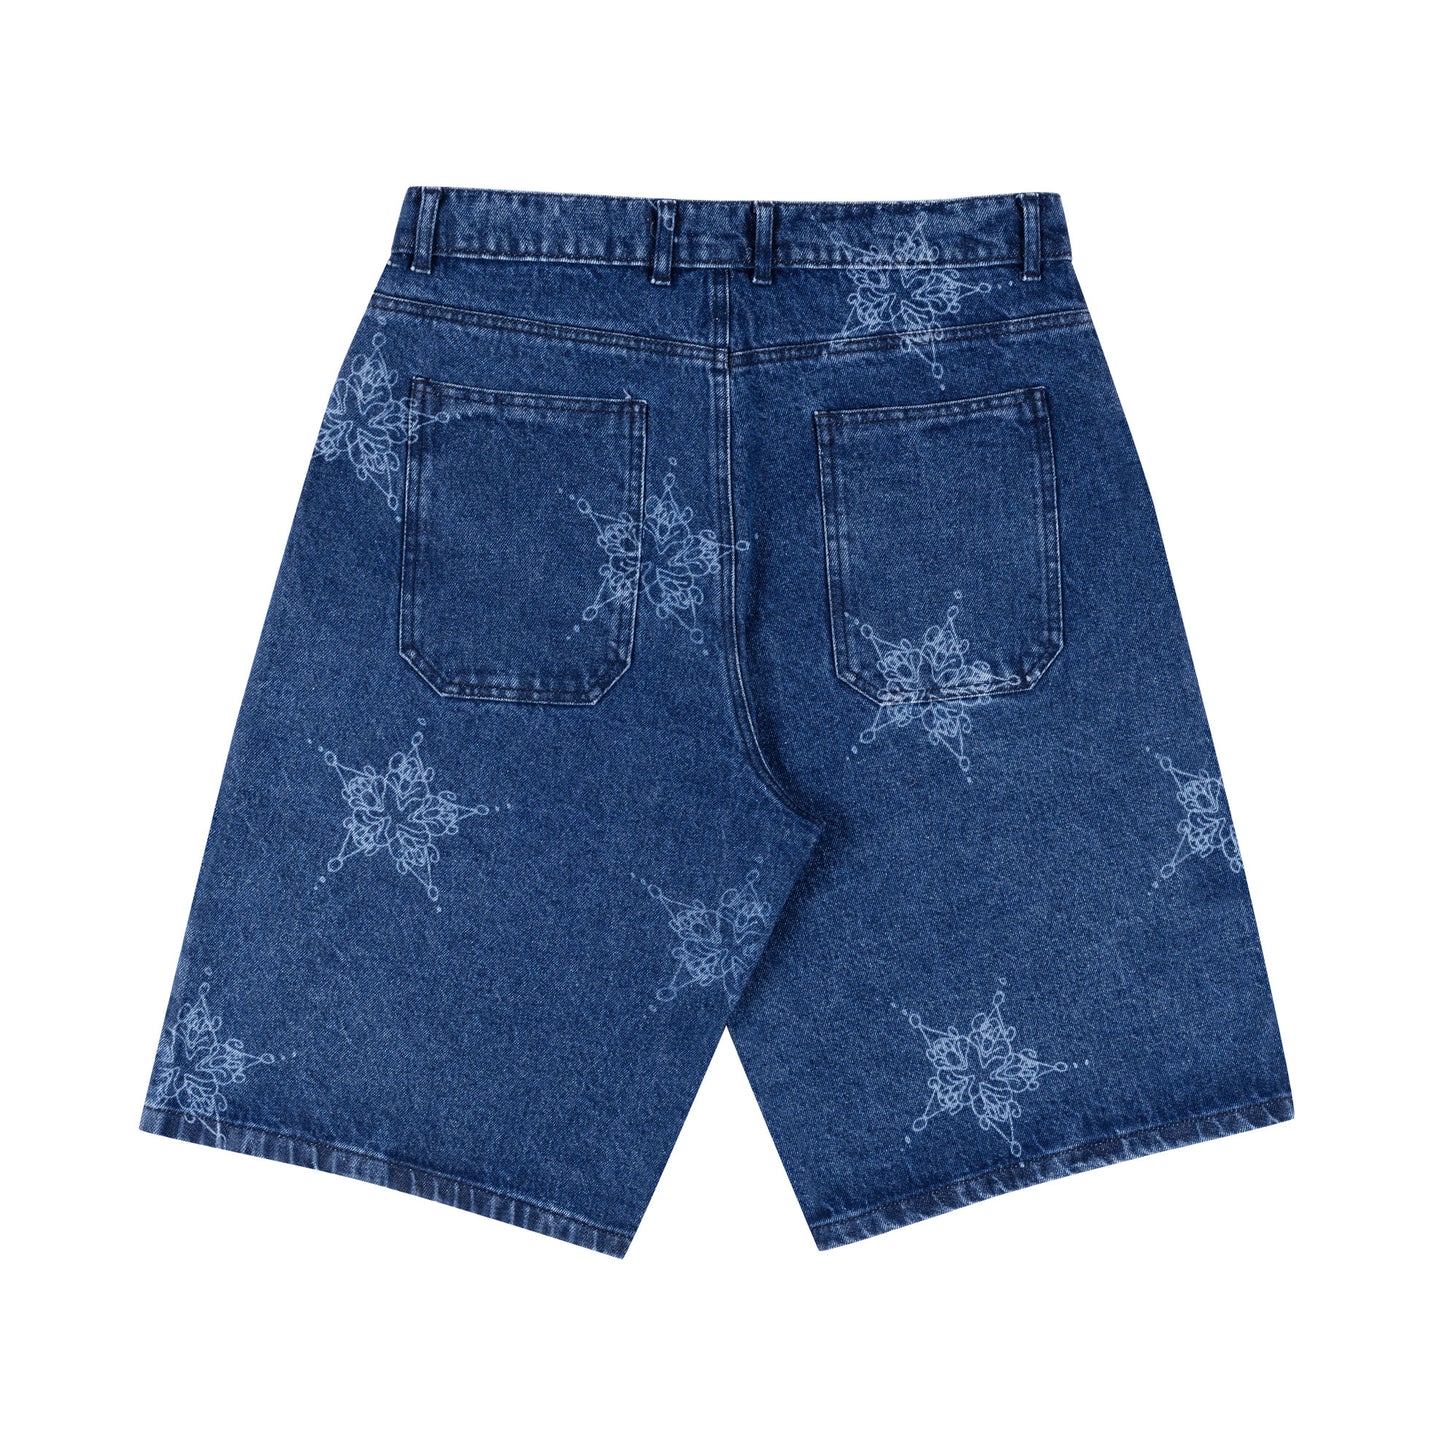 Dingus Star Shorts (Denim)